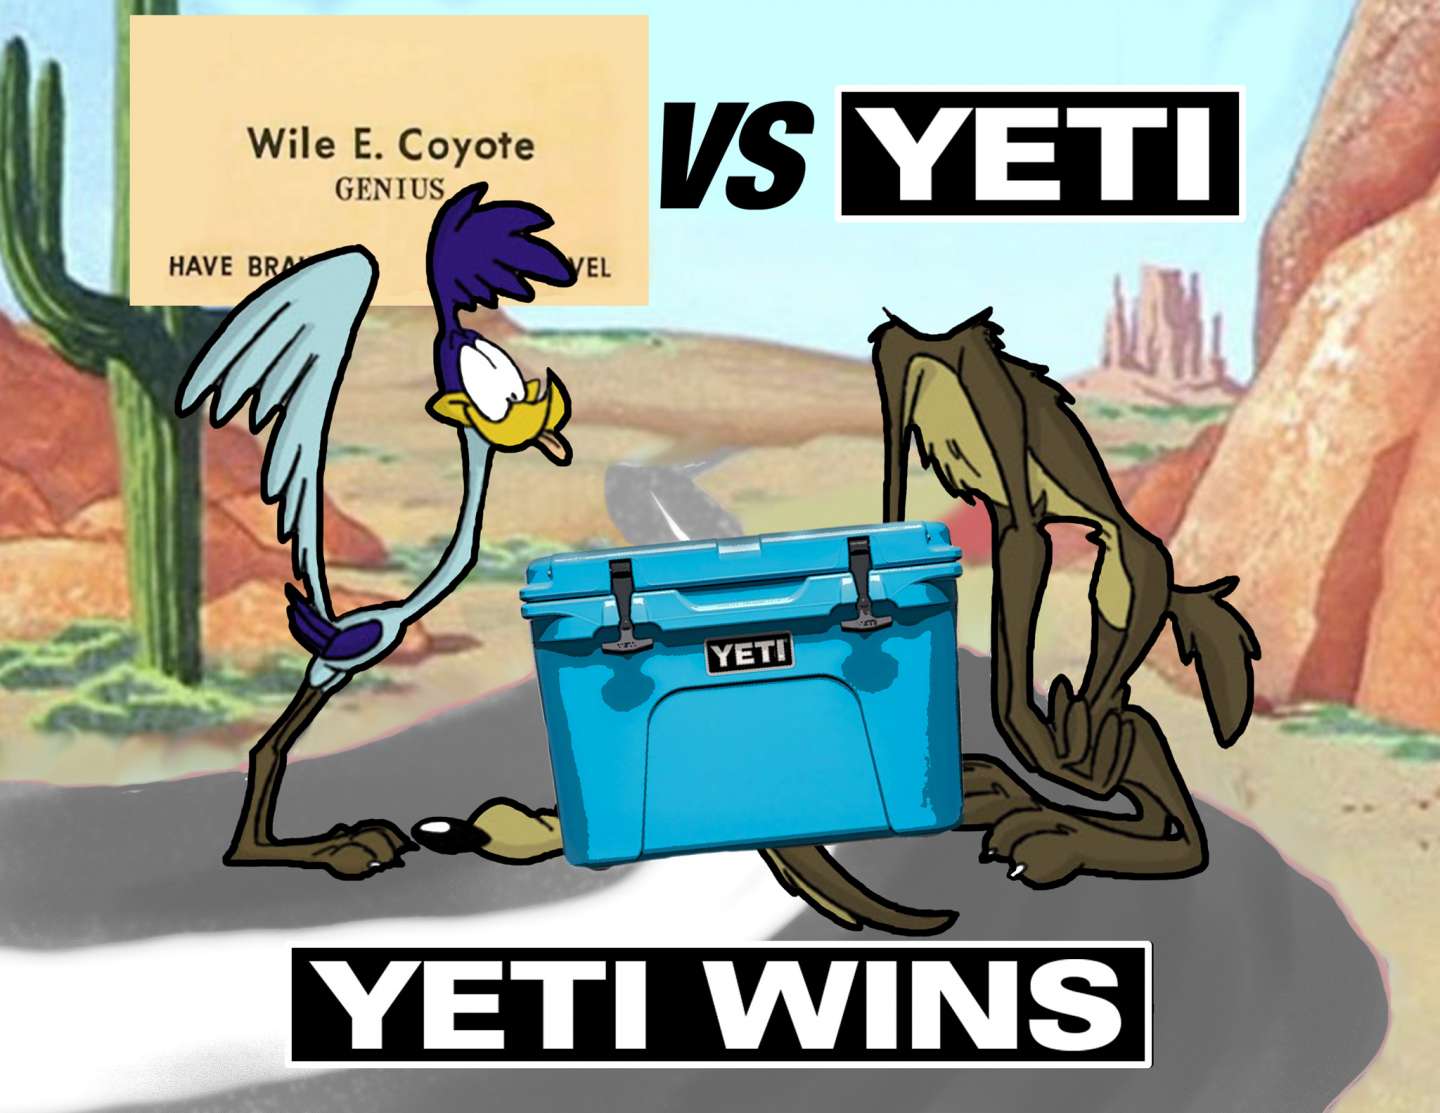 Yeti: Yeti Wins